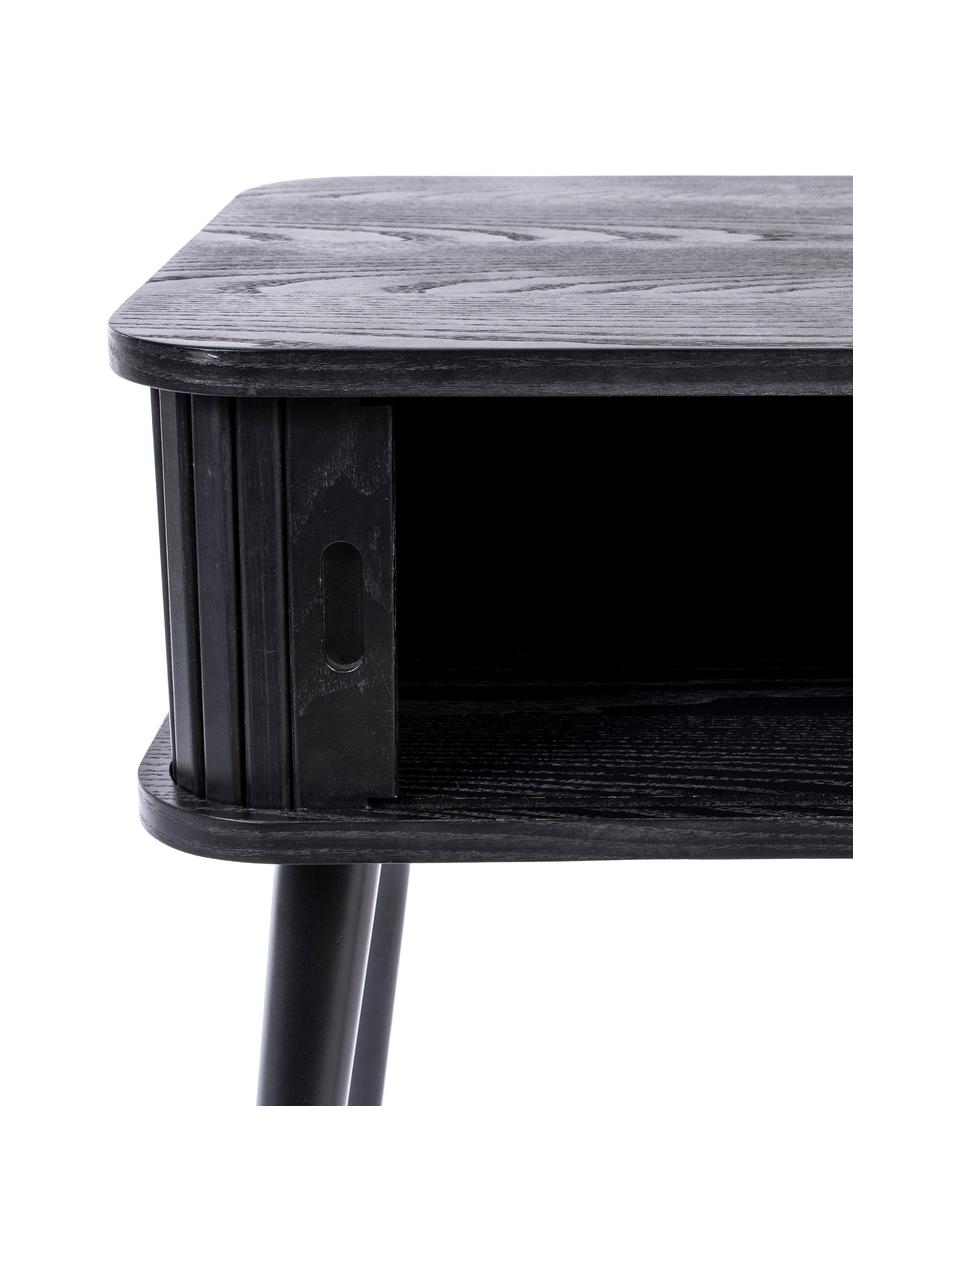 Table de chevet bois Barbier, Noir, larg. 45 x haut. 59 cm